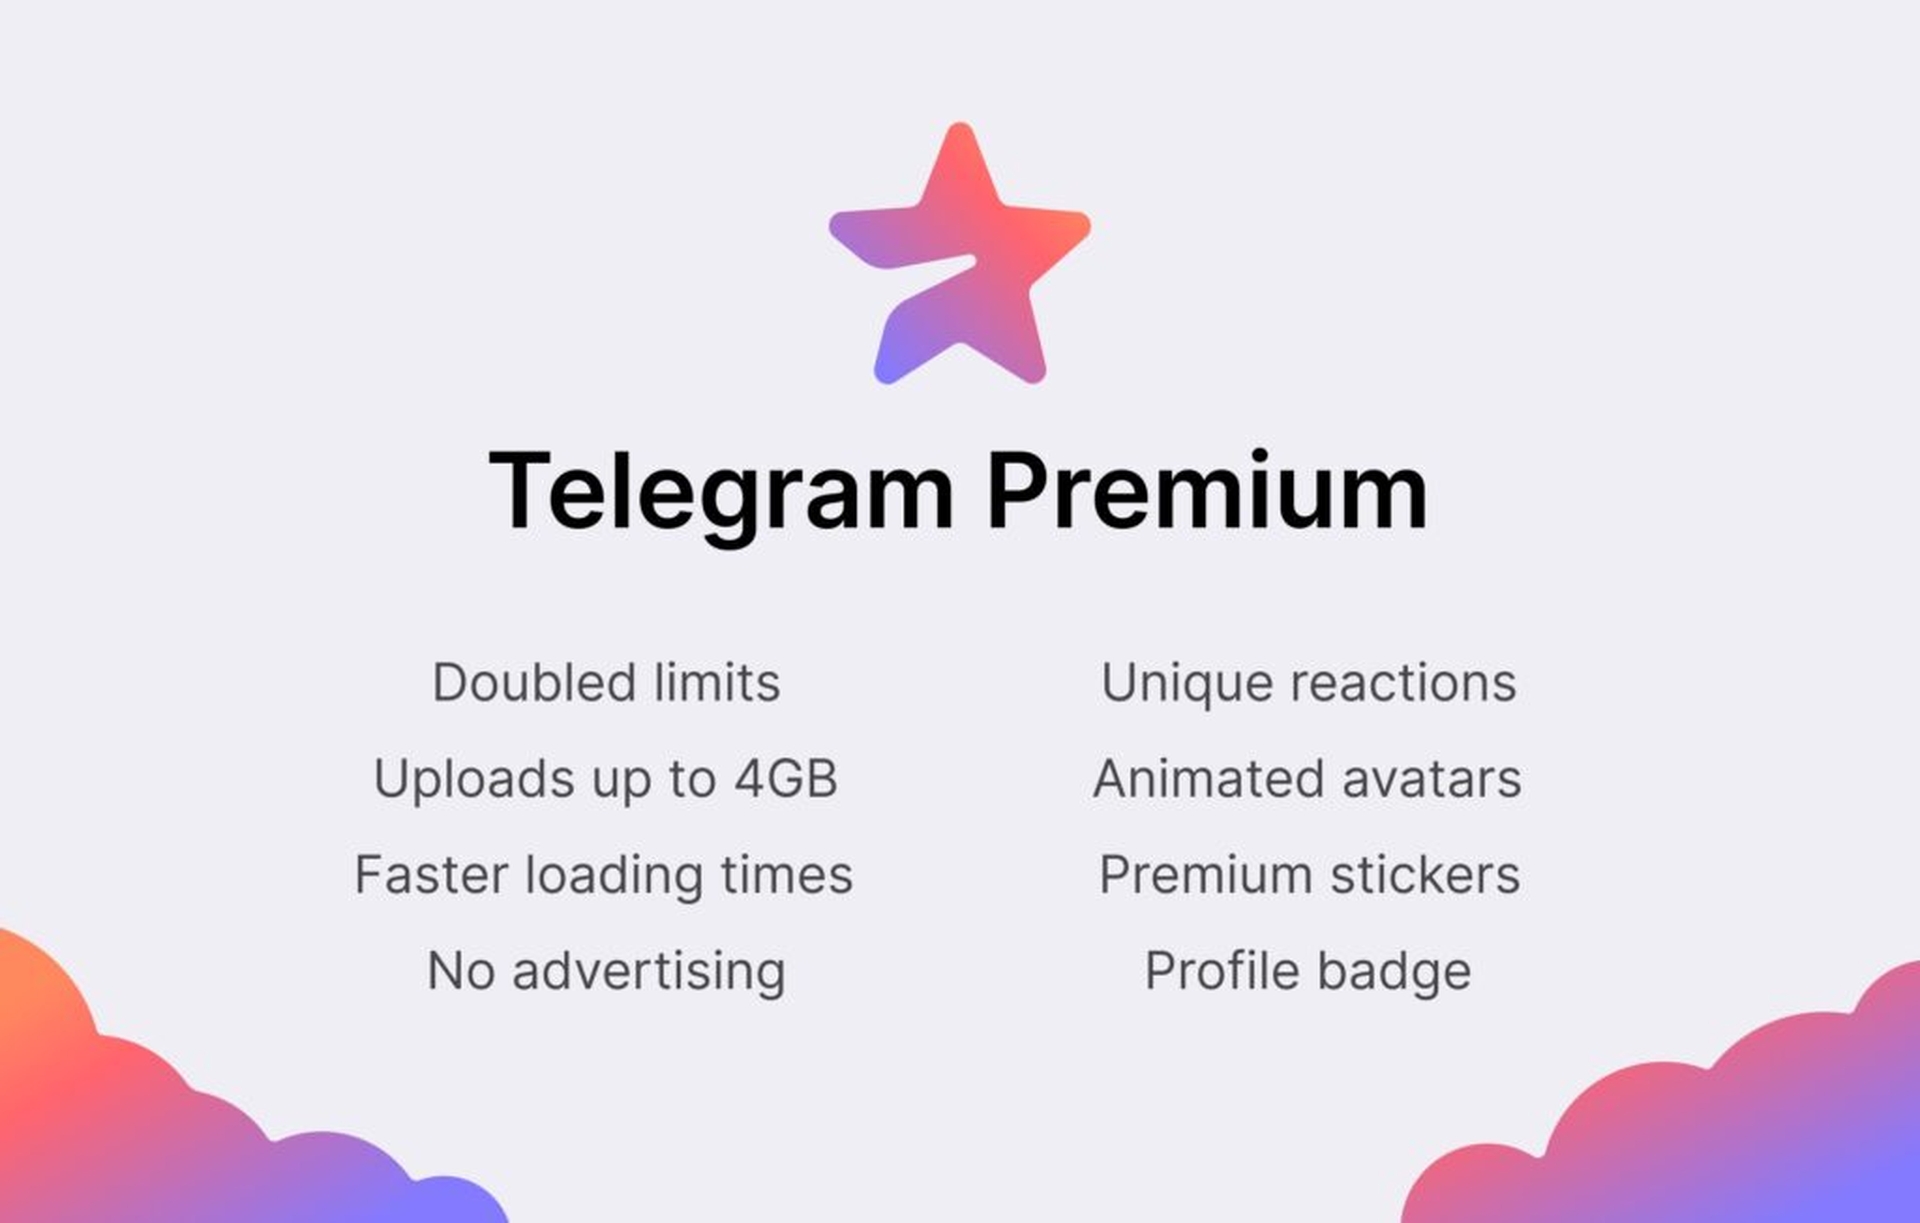 Dans cet article, nous allons couvrir l'annonce de l'abonnement payant Telegram par le créateur Pavel Durov, et comment cela affectera l'application dans son ensemble.